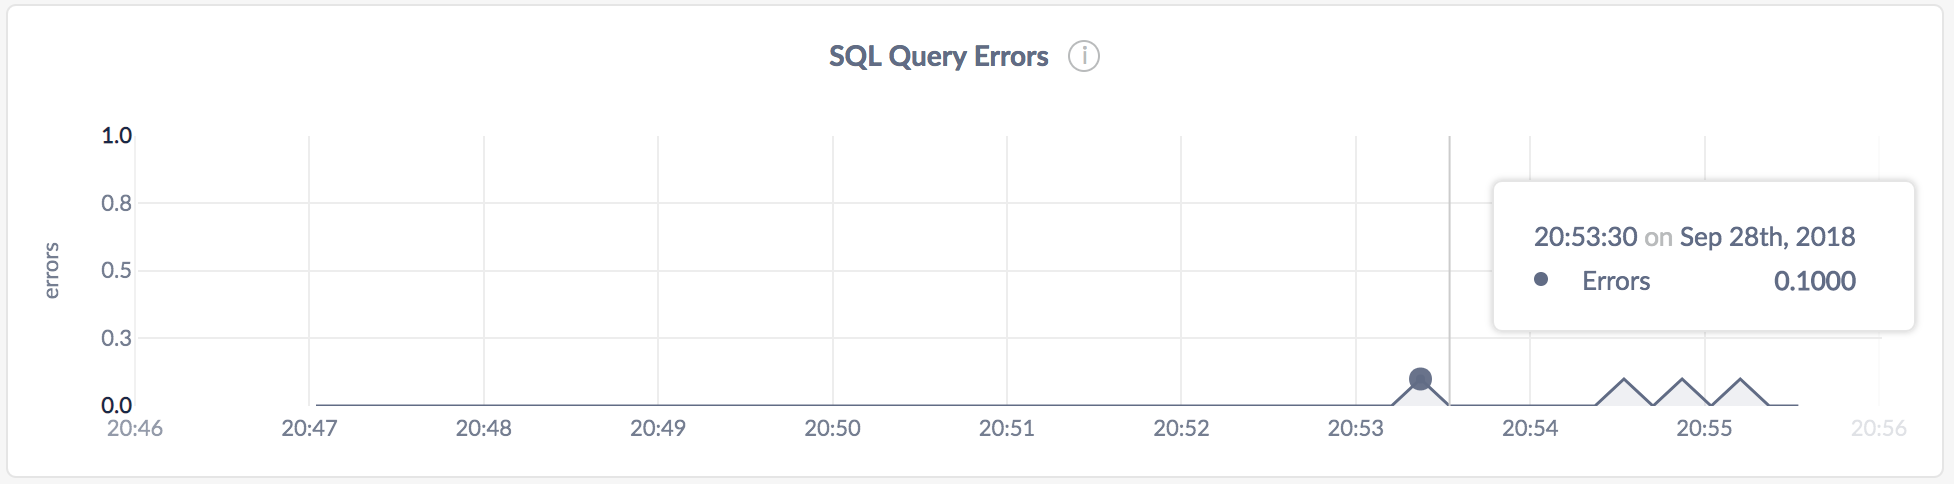 DB Console SQL Query Errors